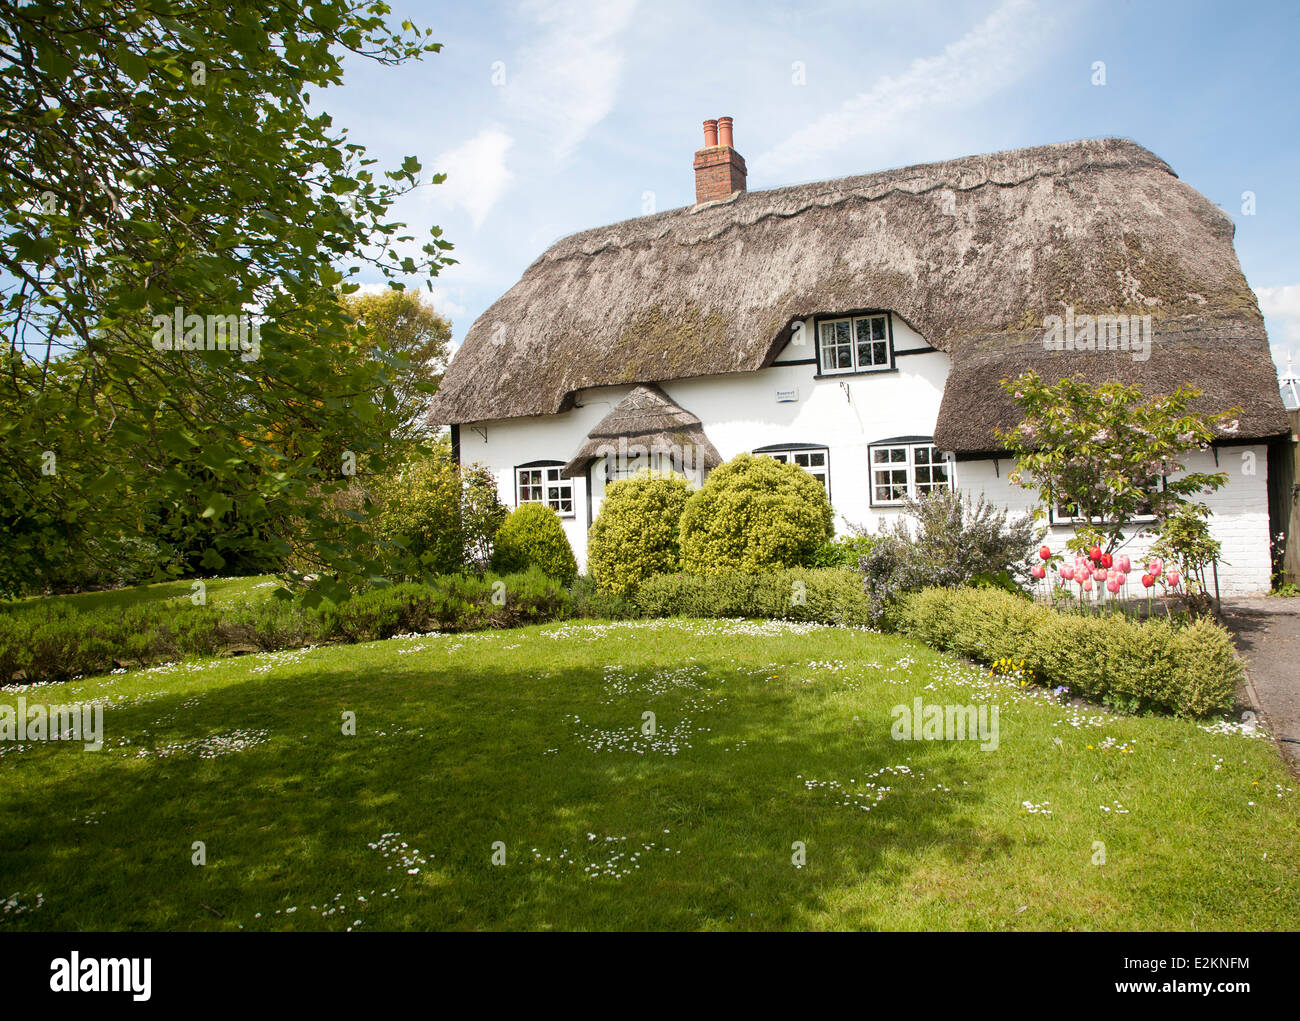 Joli chalet chaume dans le village d'Allington, Wiltshire, Angleterre Banque D'Images